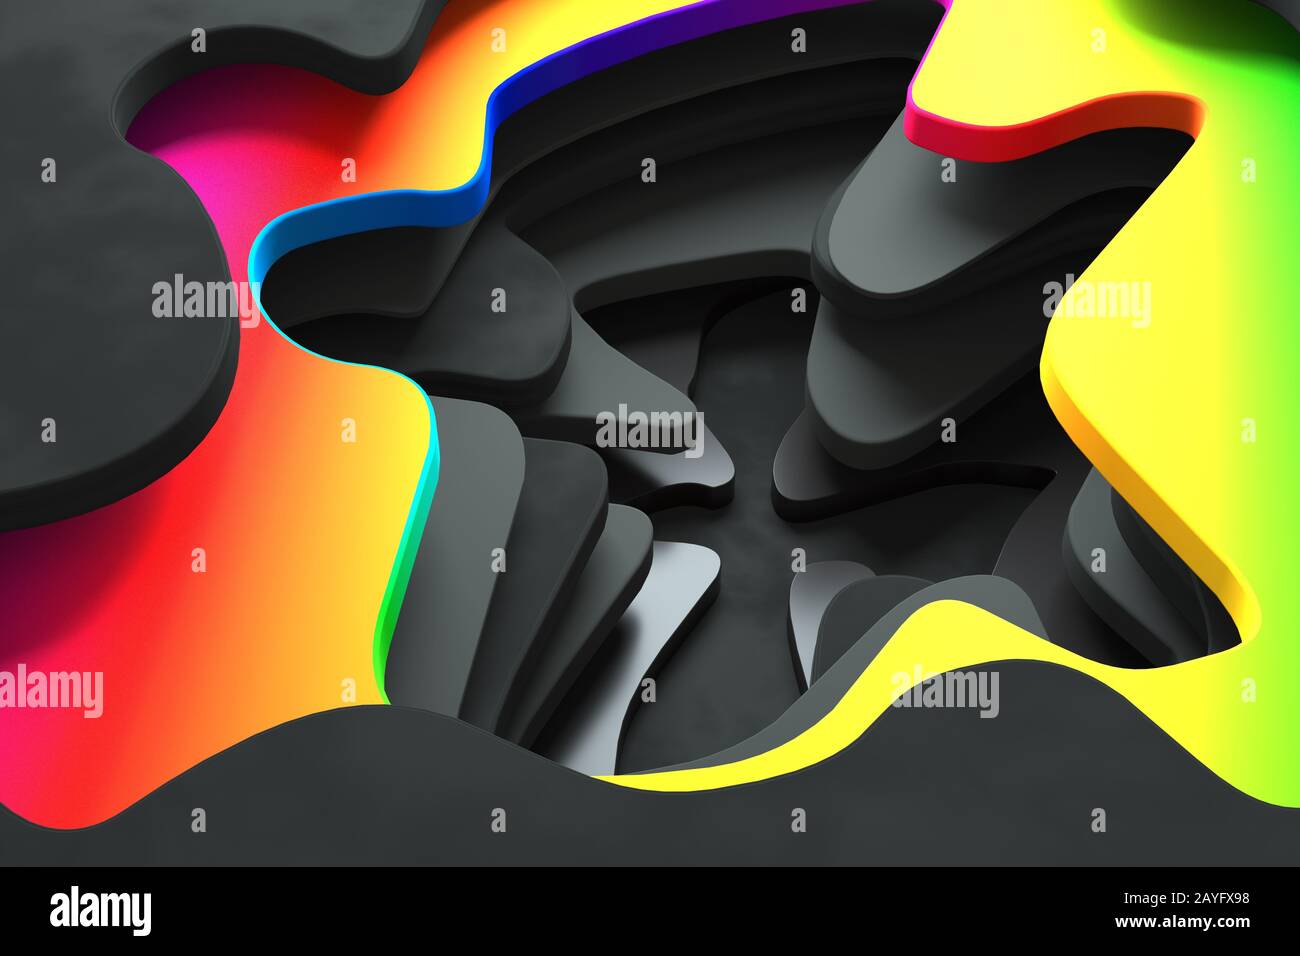 Immagine astratta di un imbuto con linee di fantascienza arcobaleno Foto Stock